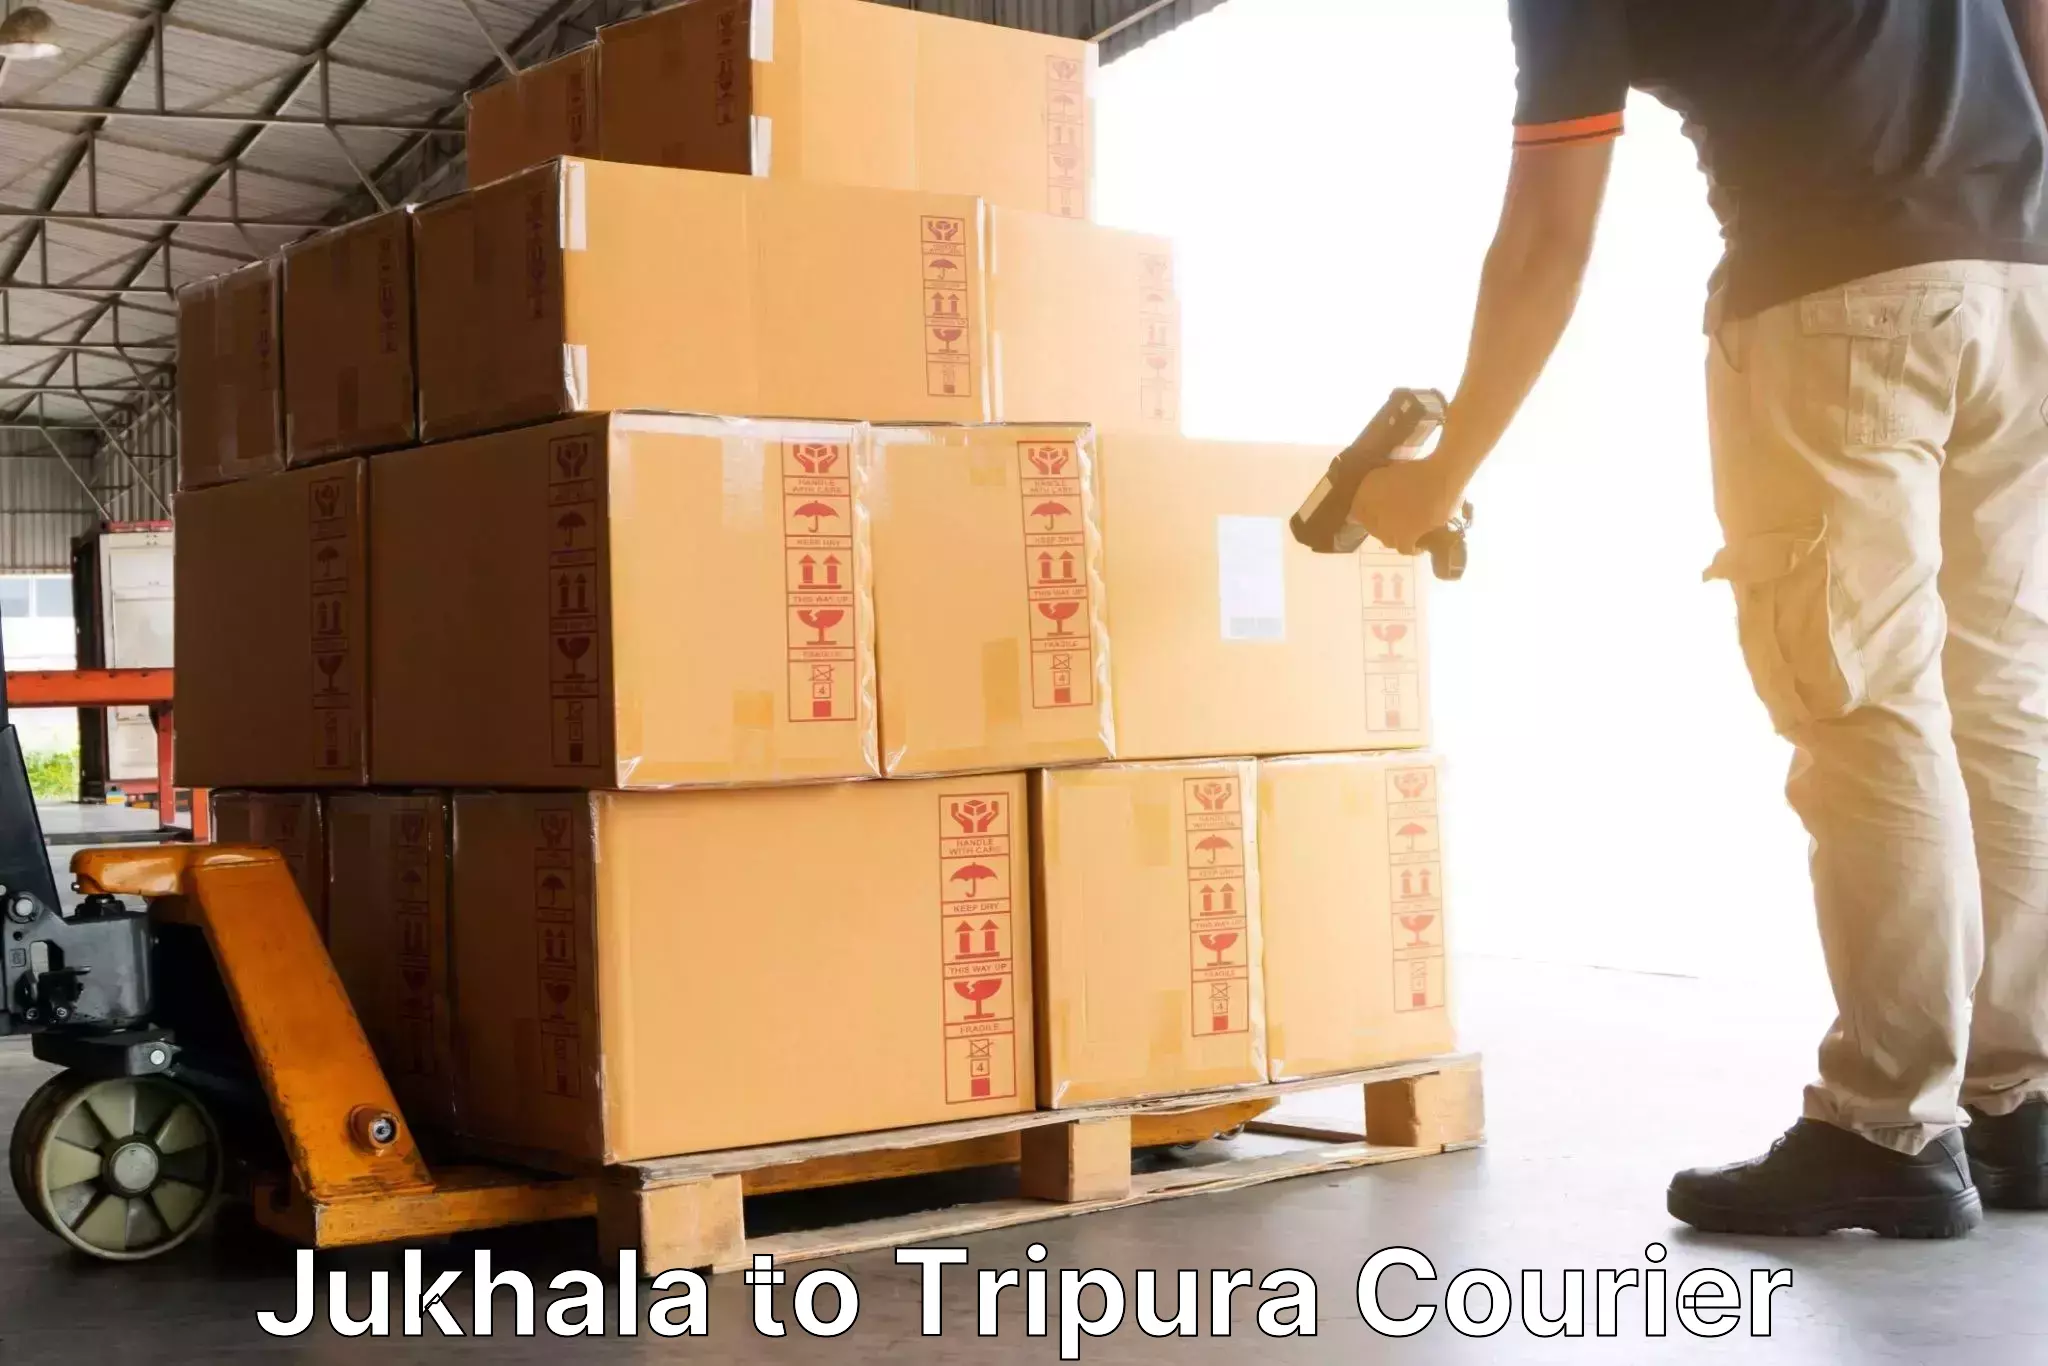 Quick dispatch service Jukhala to Ambassa